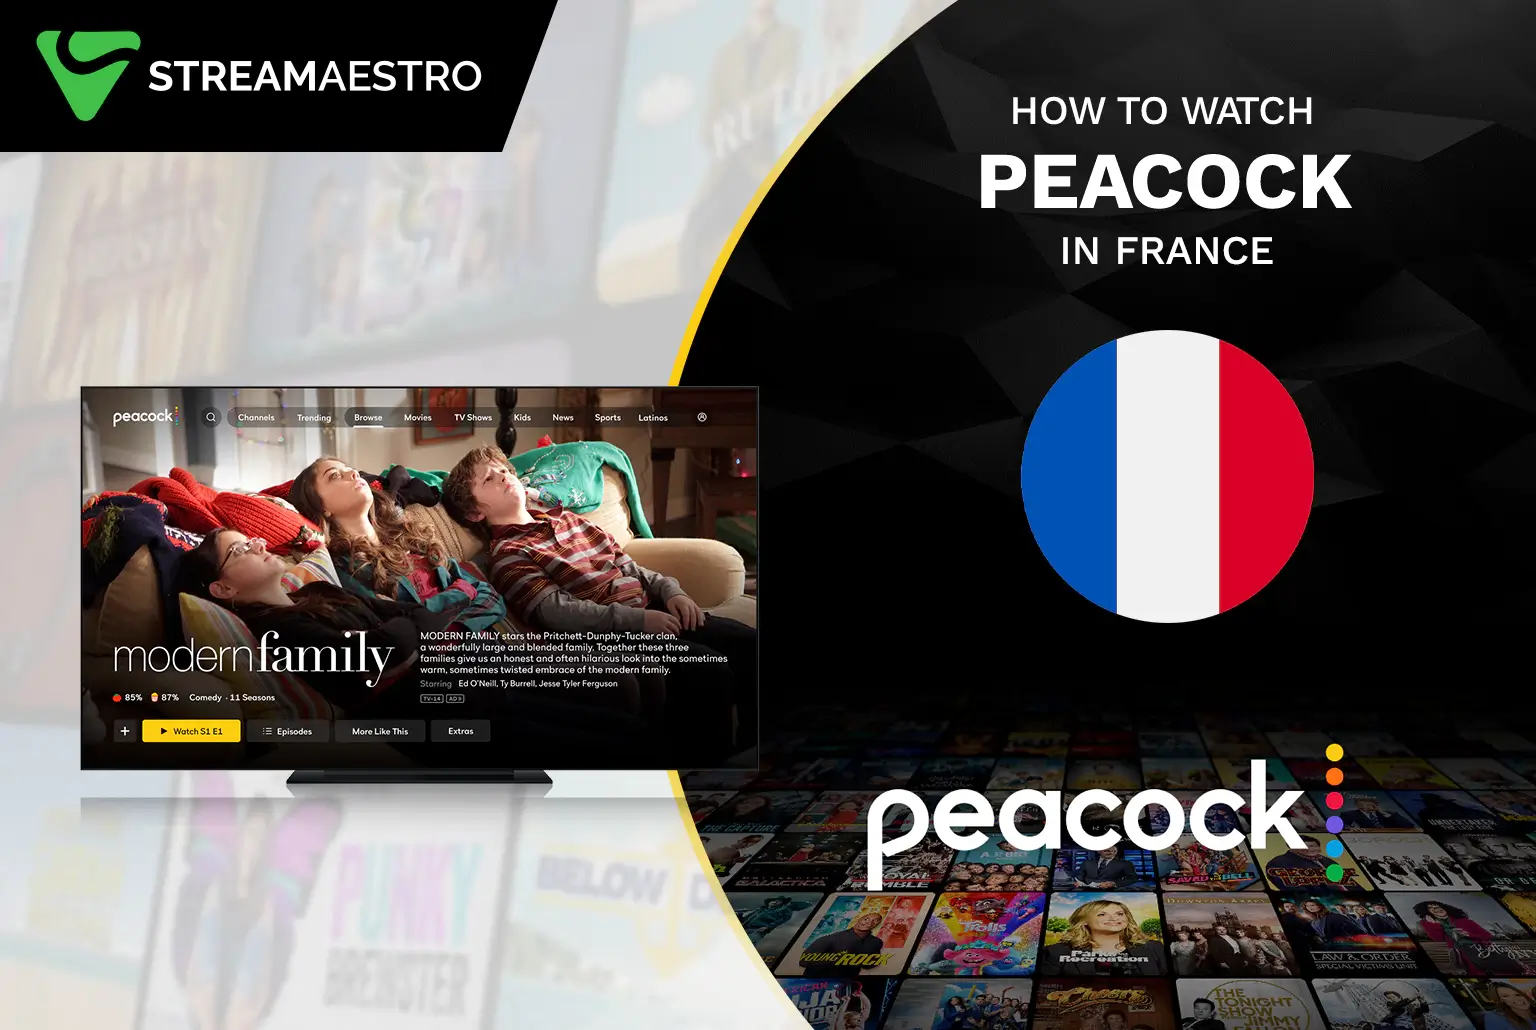 Peacock TV in France